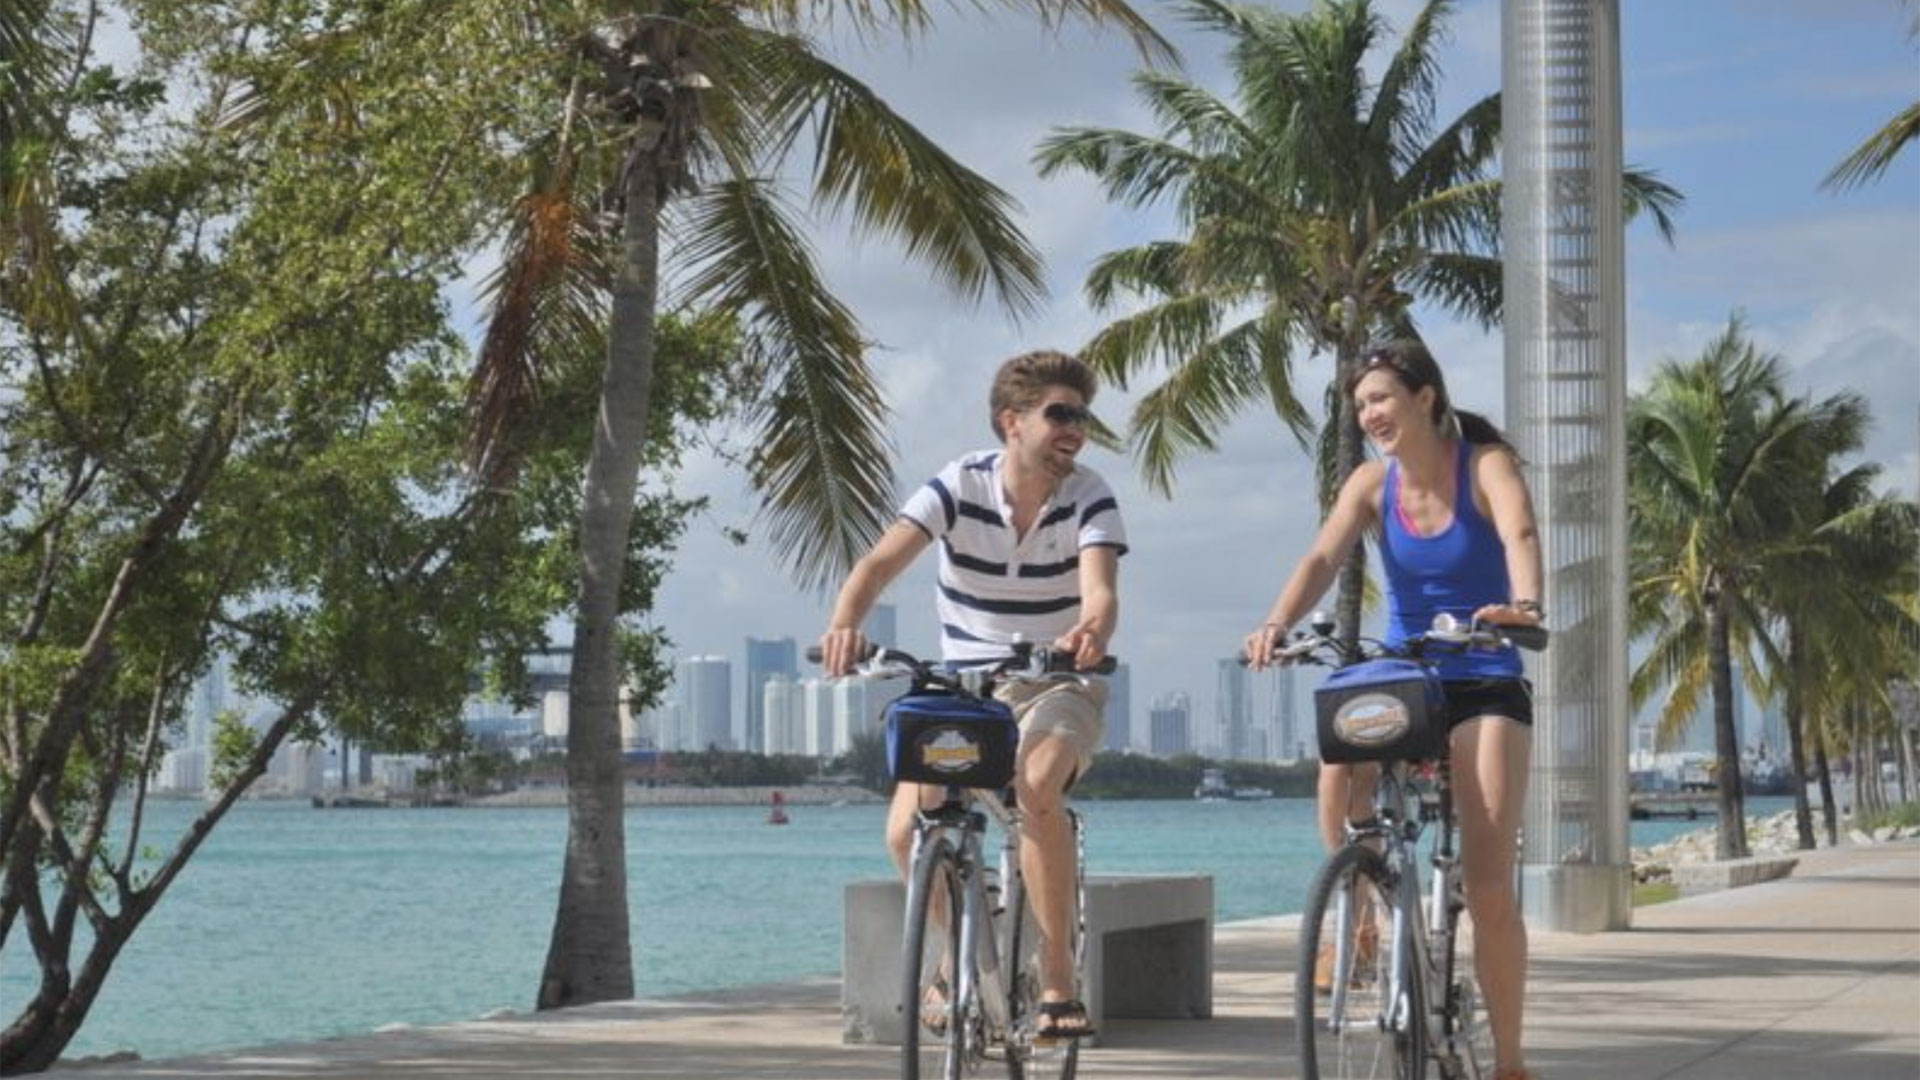 art deco bike tour miami beach